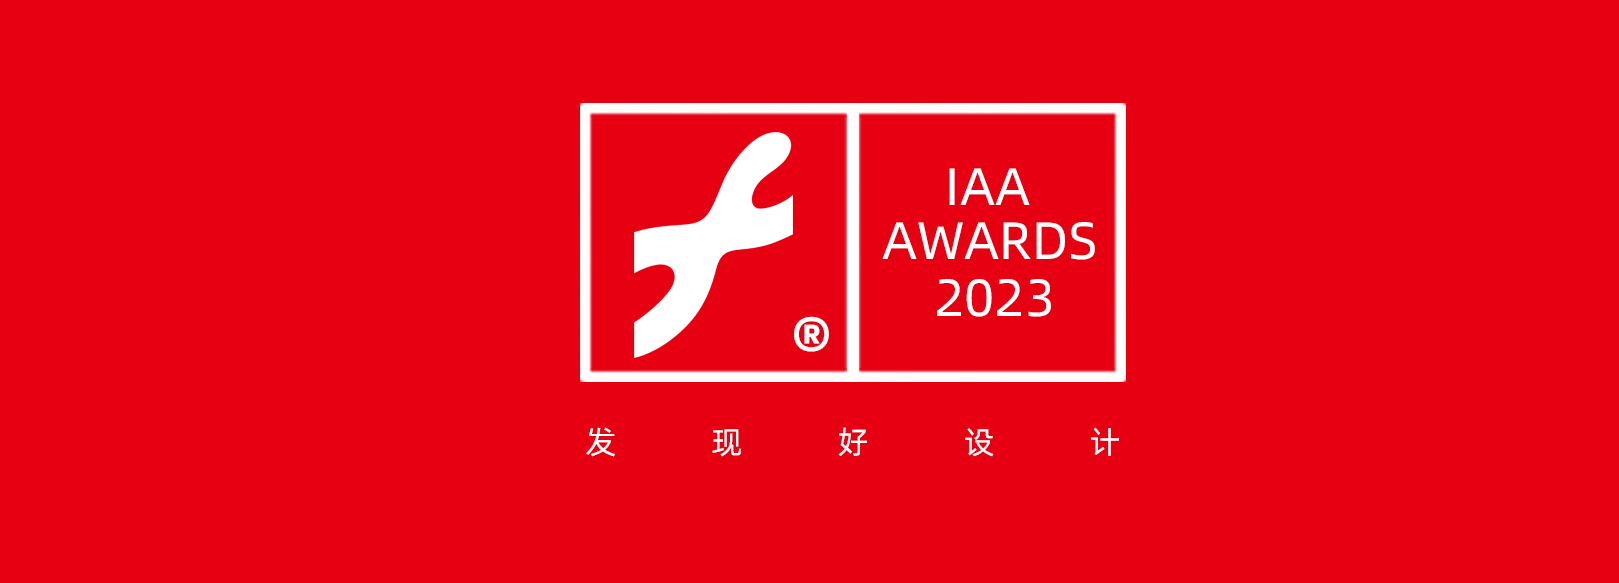 2022 互艺奖 / Interactive Art Awards(图1)